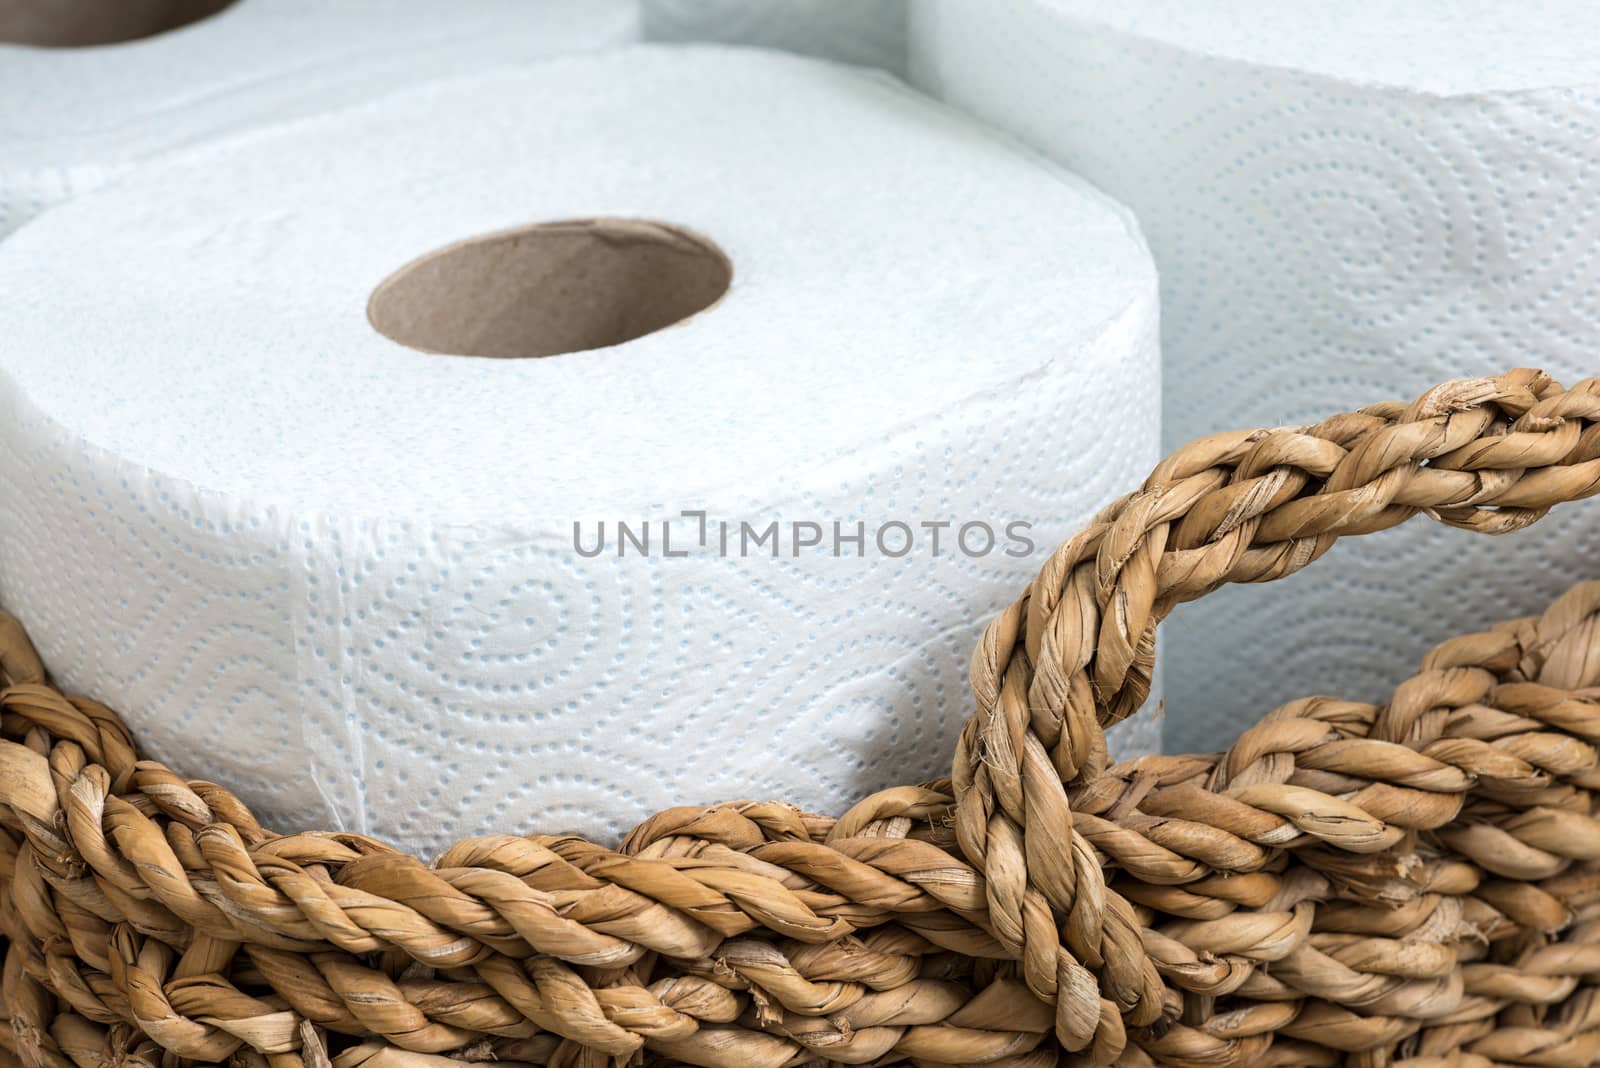 paper towel in a wicker basket by DNKSTUDIO